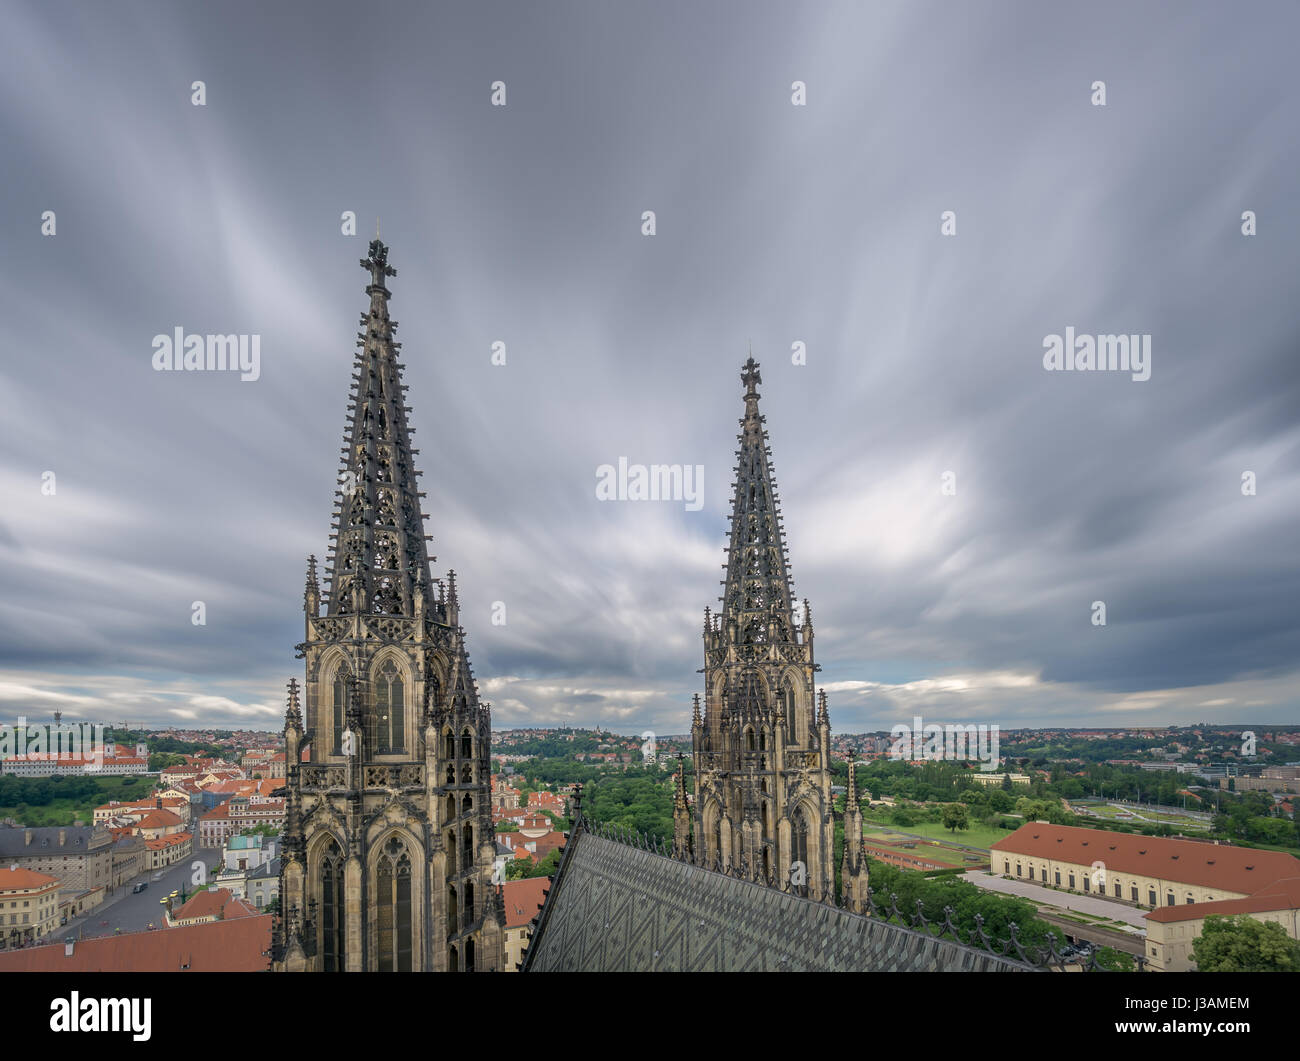 Una vista desde la cima de la torre de la Catedral de San Vito en Praga, incluyendo las torres de la iglesia gótica y una vista panorámica de la ciudad de Praga. Foto de stock